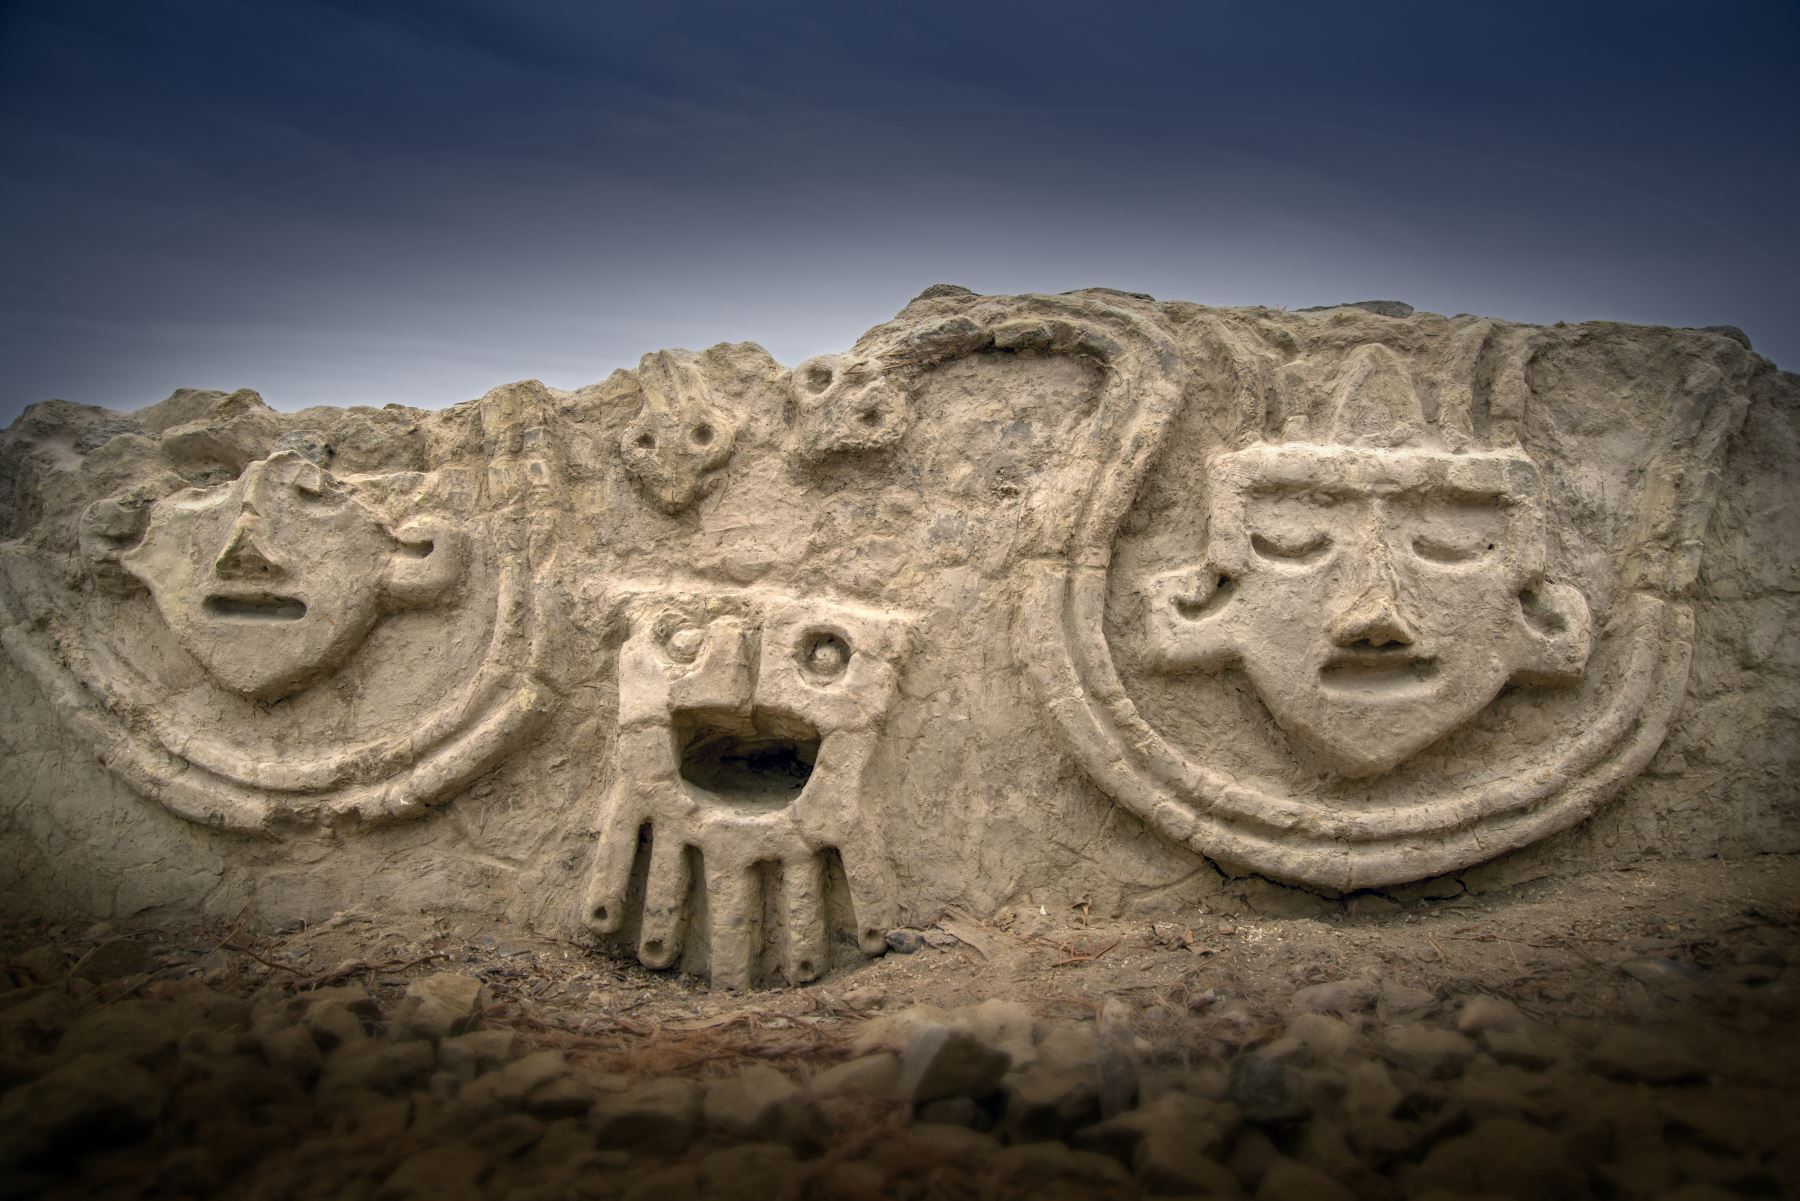 El muro, que tendría una antigüedad de alrededor de 3,800 años, consiste en cuatro cabezas humanas con los ojos cerrados, una al lado de la otra, y dos serpientes. Foto: ANDINA/Zona Arqueológica de Caral